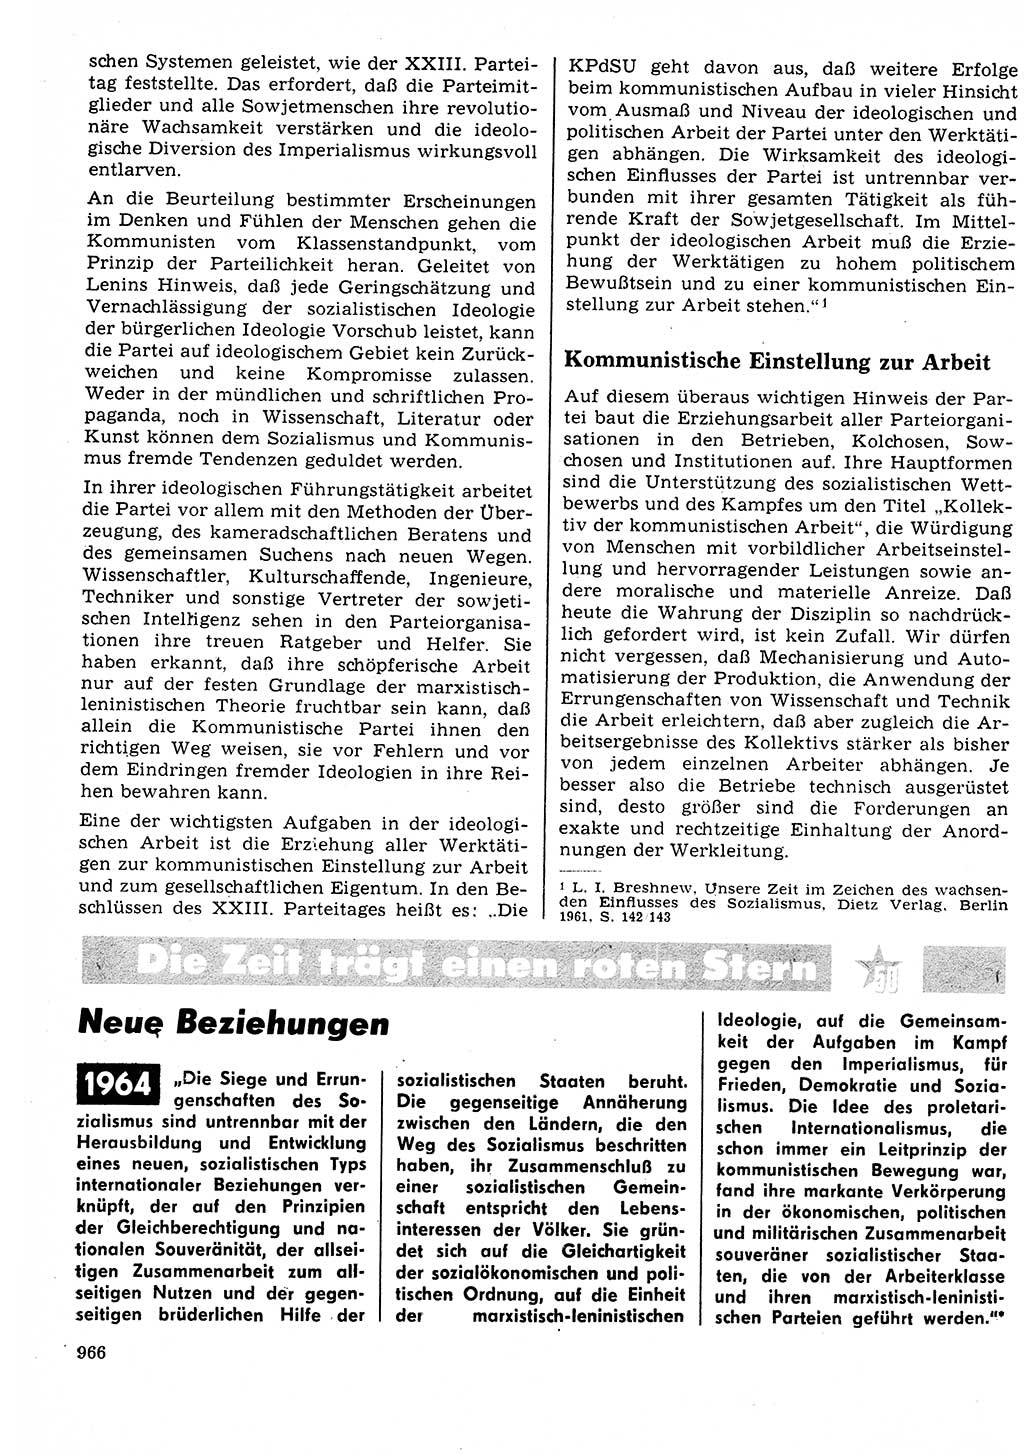 Neuer Weg (NW), Organ des Zentralkomitees (ZK) der SED (Sozialistische Einheitspartei Deutschlands) für Fragen des Parteilebens, 22. Jahrgang [Deutsche Demokratische Republik (DDR)] 1967, Seite 966 (NW ZK SED DDR 1967, S. 966)